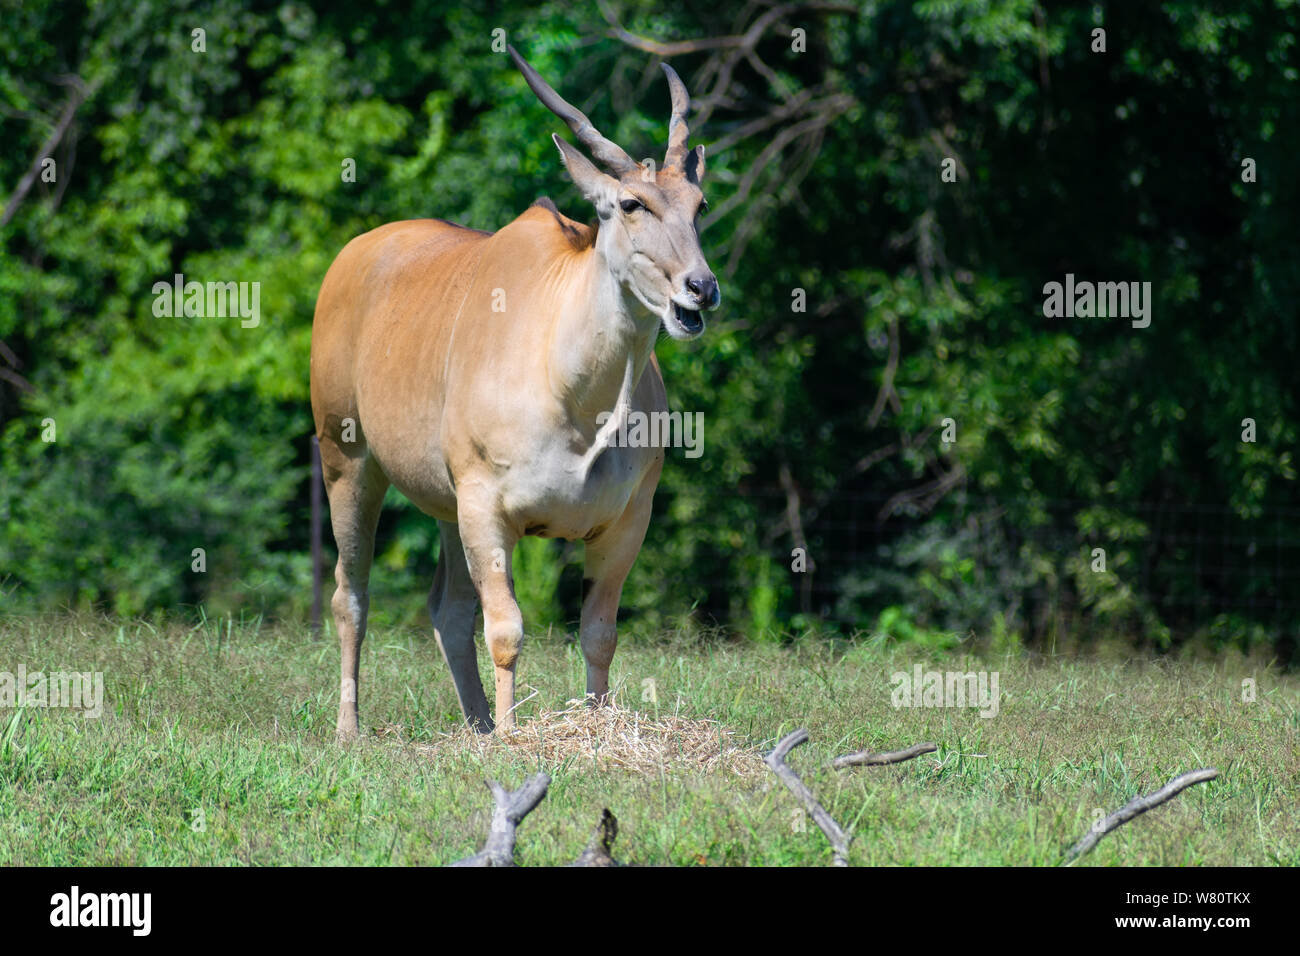 L'eland, commune dans les champs, la mastication. Banque D'Images